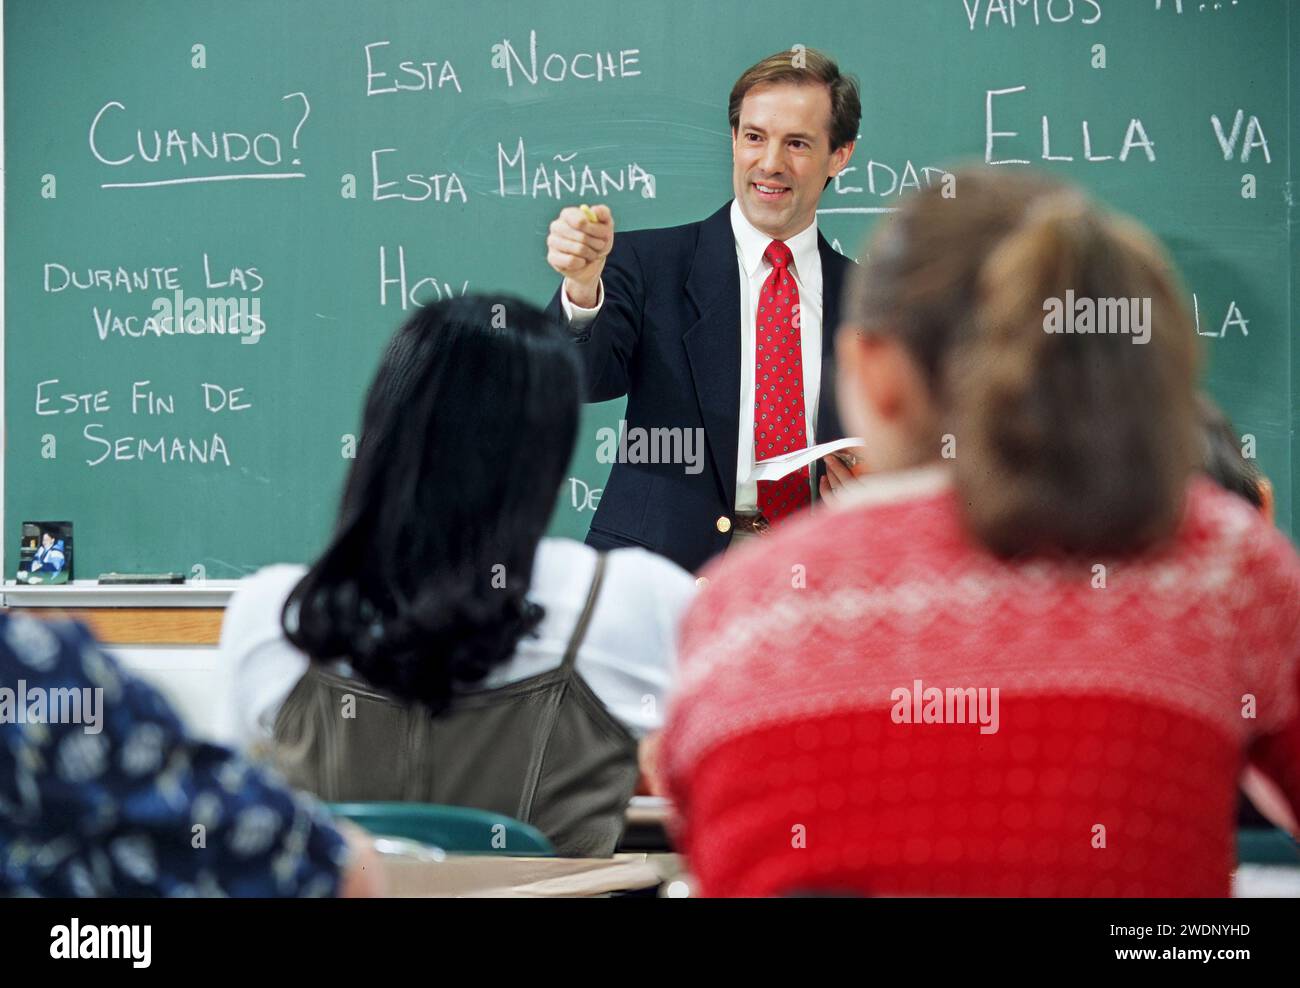 Hombre Caucásico Español Lengua Secundaria Profesor de pie frente a una pizarra con español escrito en el tablero bien cuestionando a sus estudiantes Foto de stock